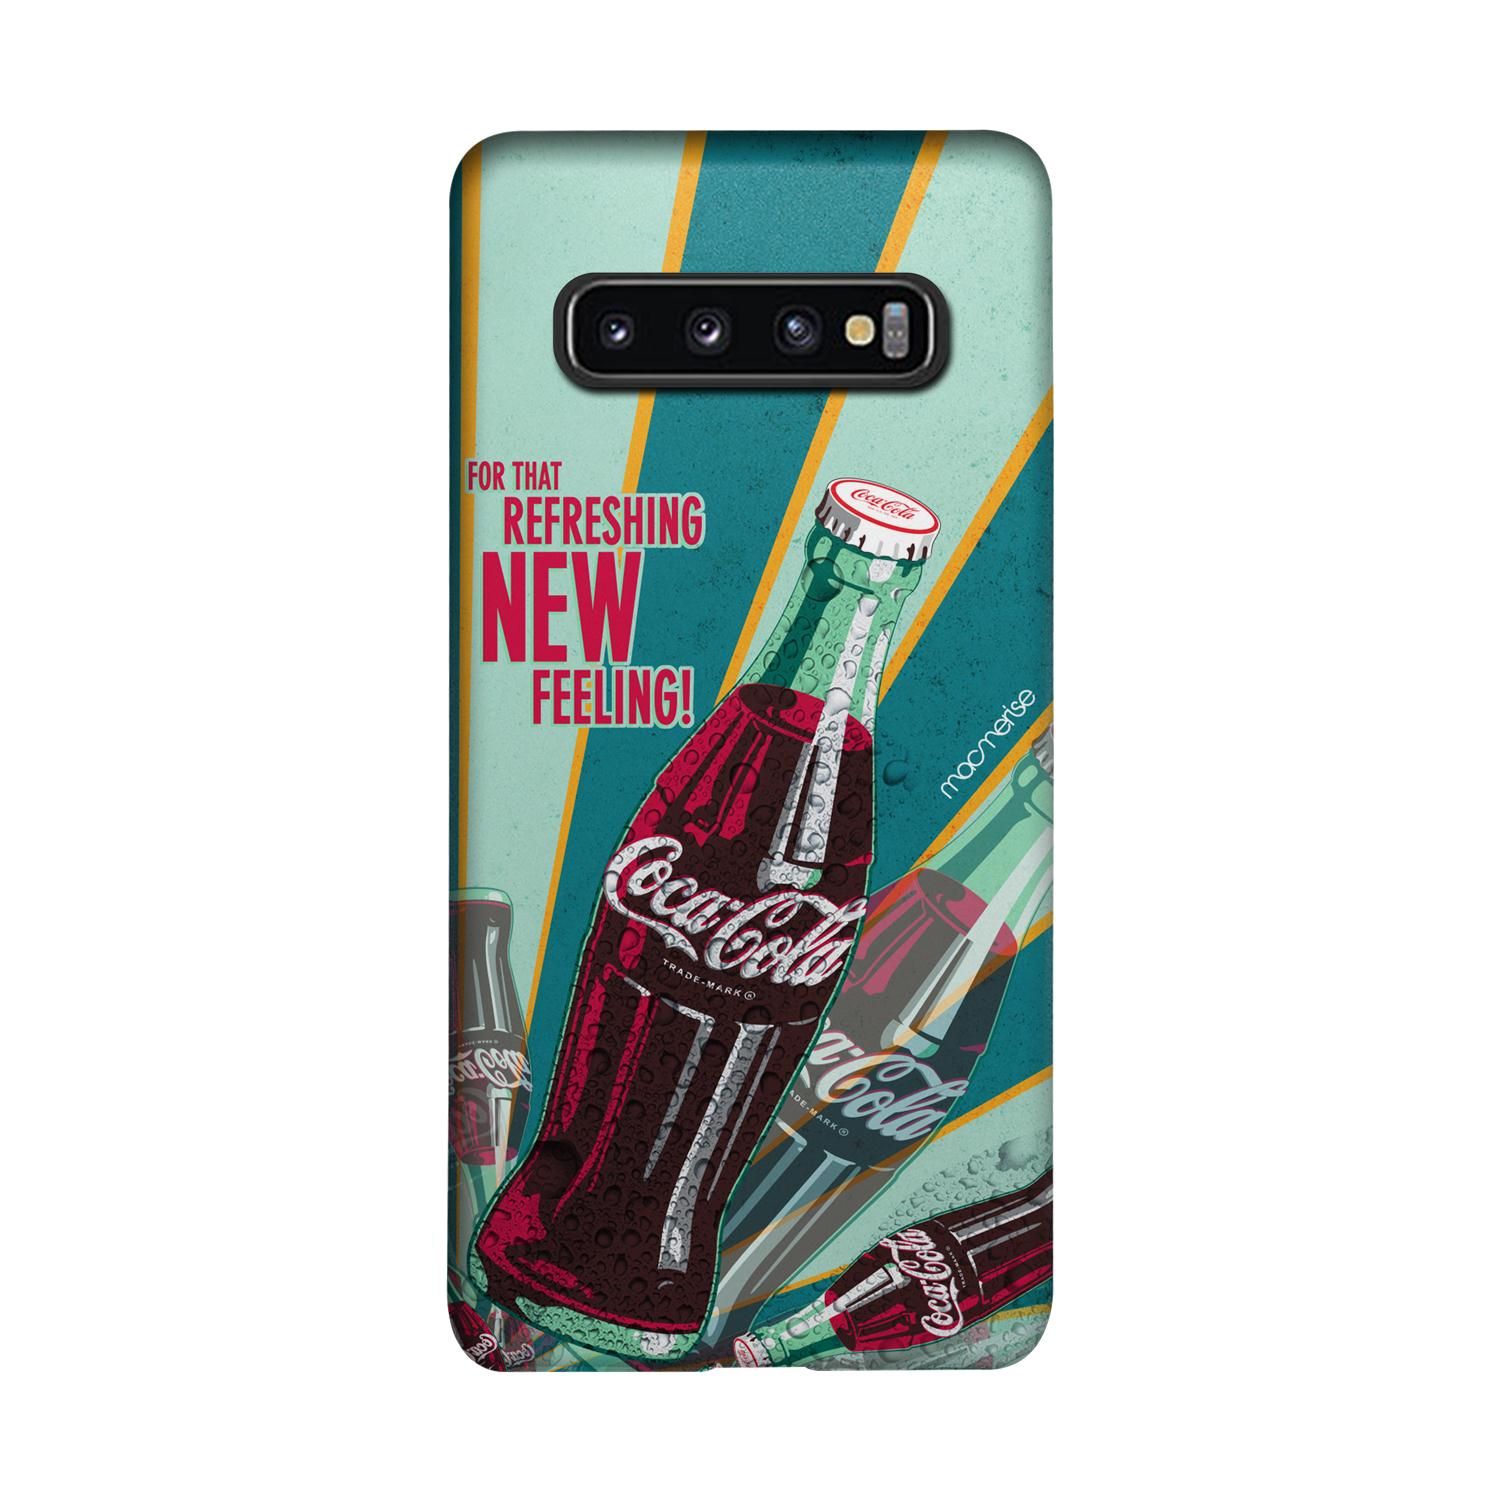 New Feeling - Sleek Phone Case for Samsung S10